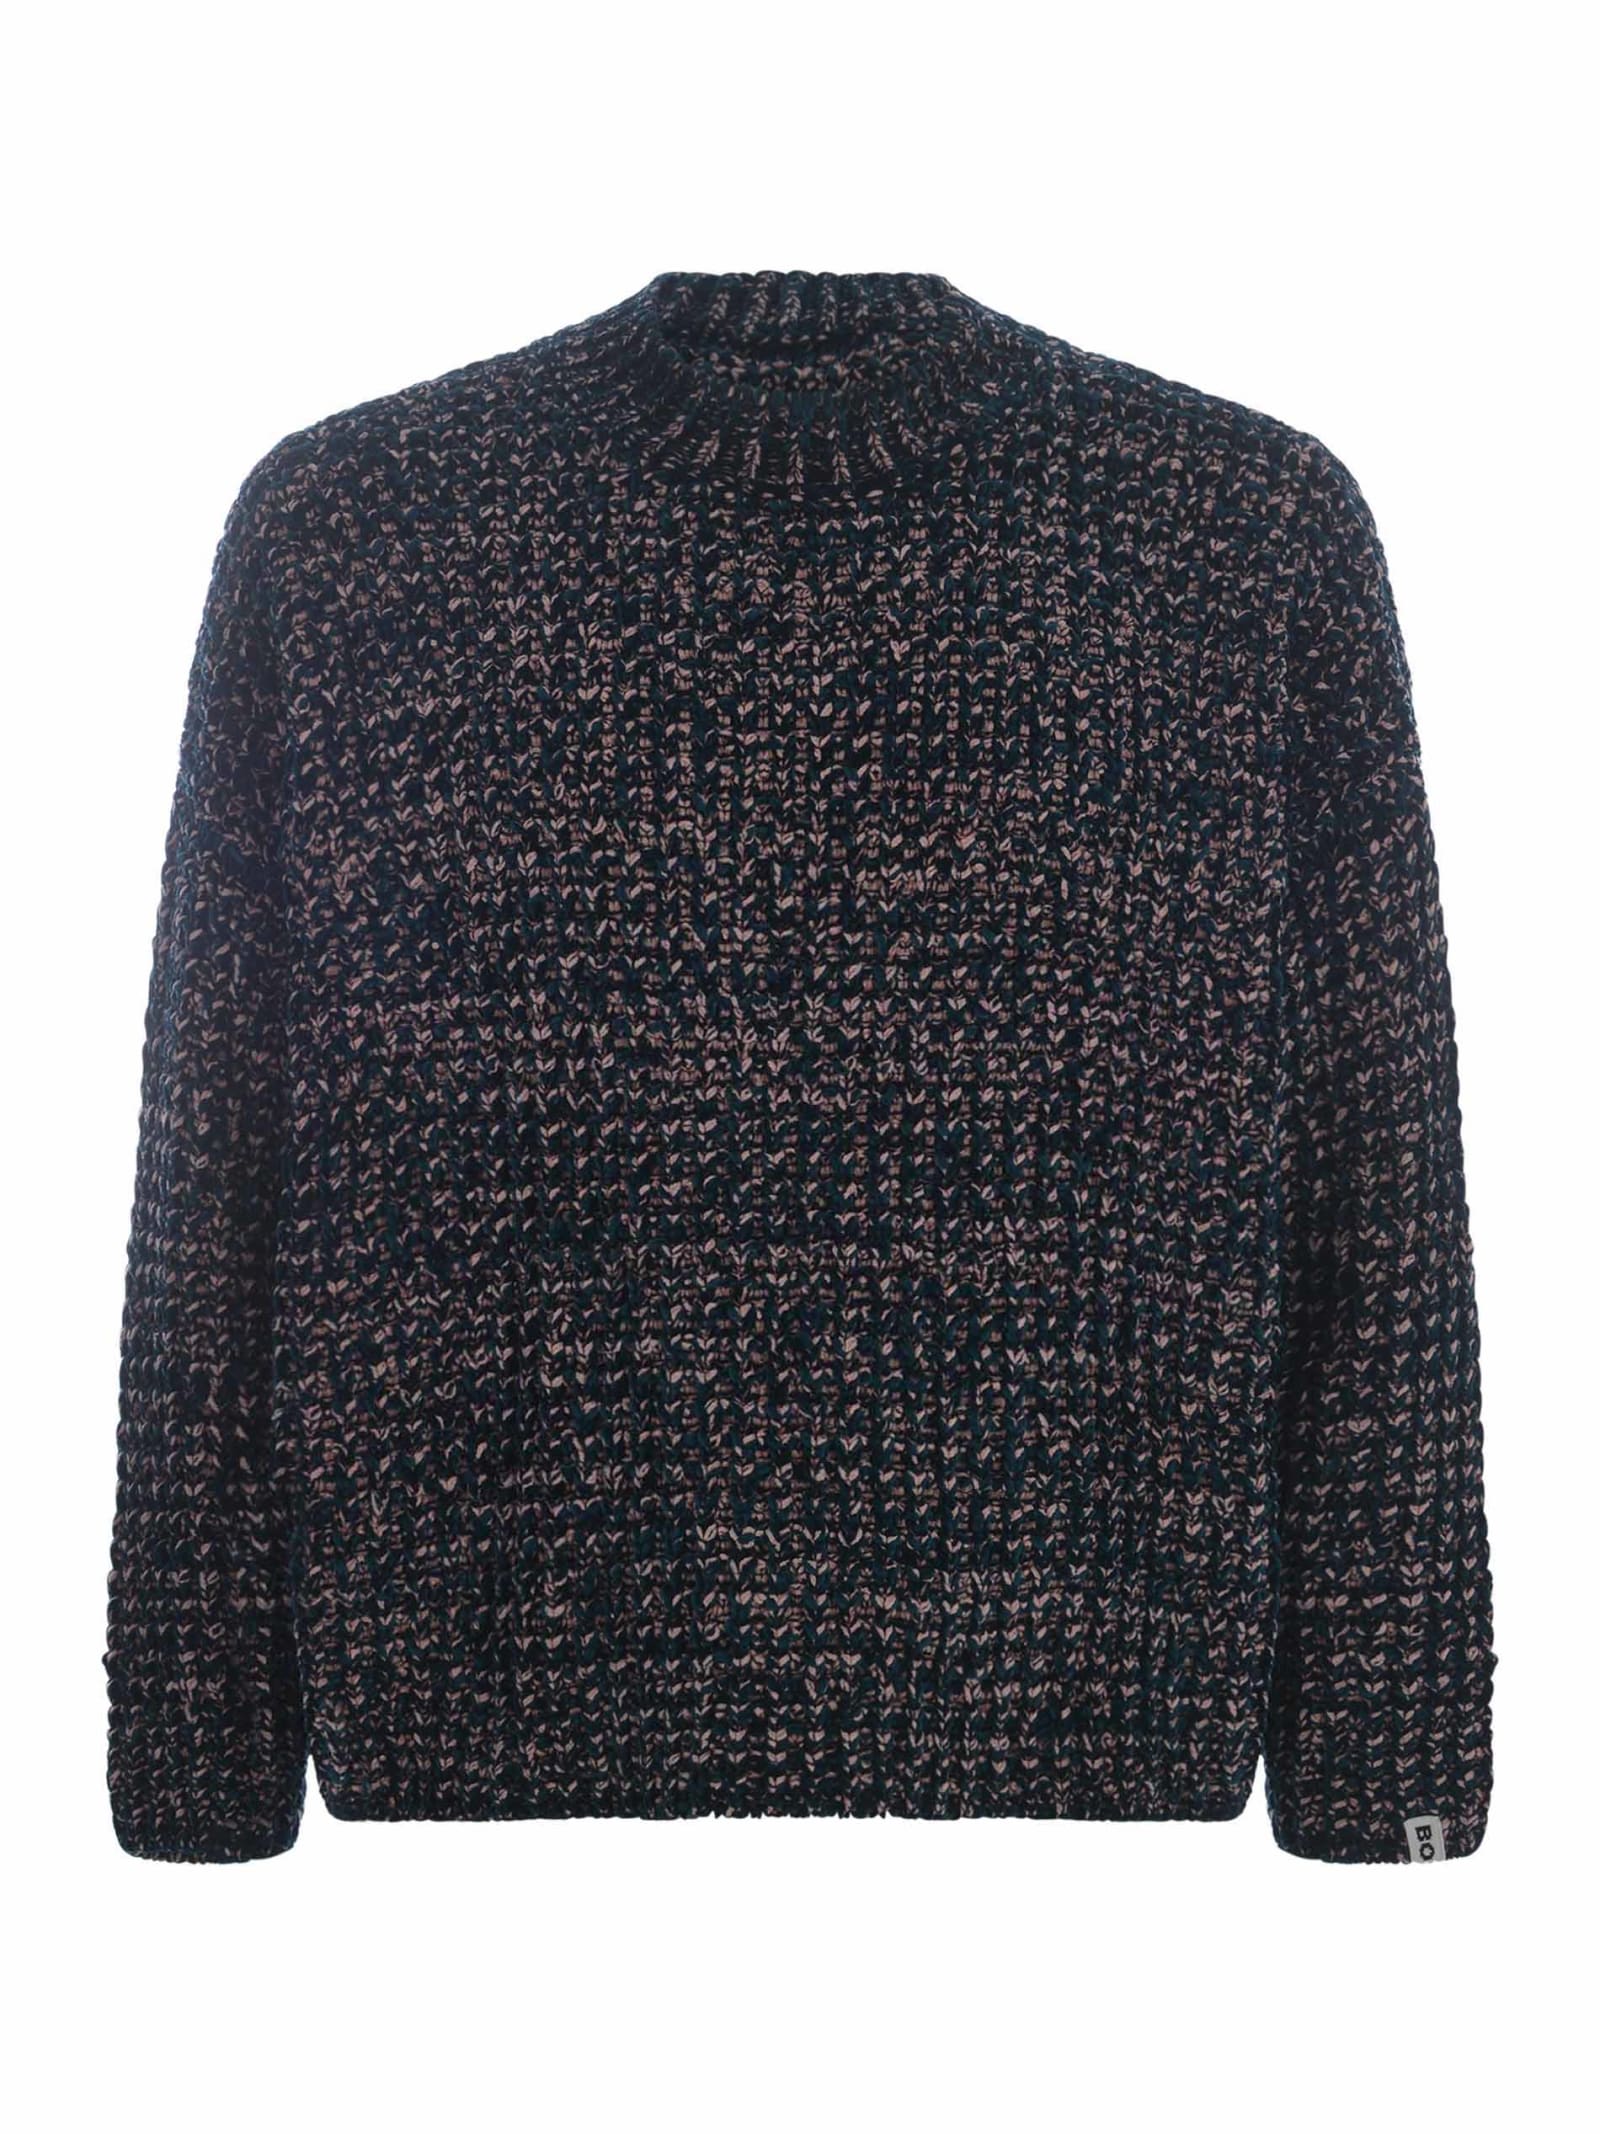 Shop Bonsai Sweater  Made Of Chenille In Nero